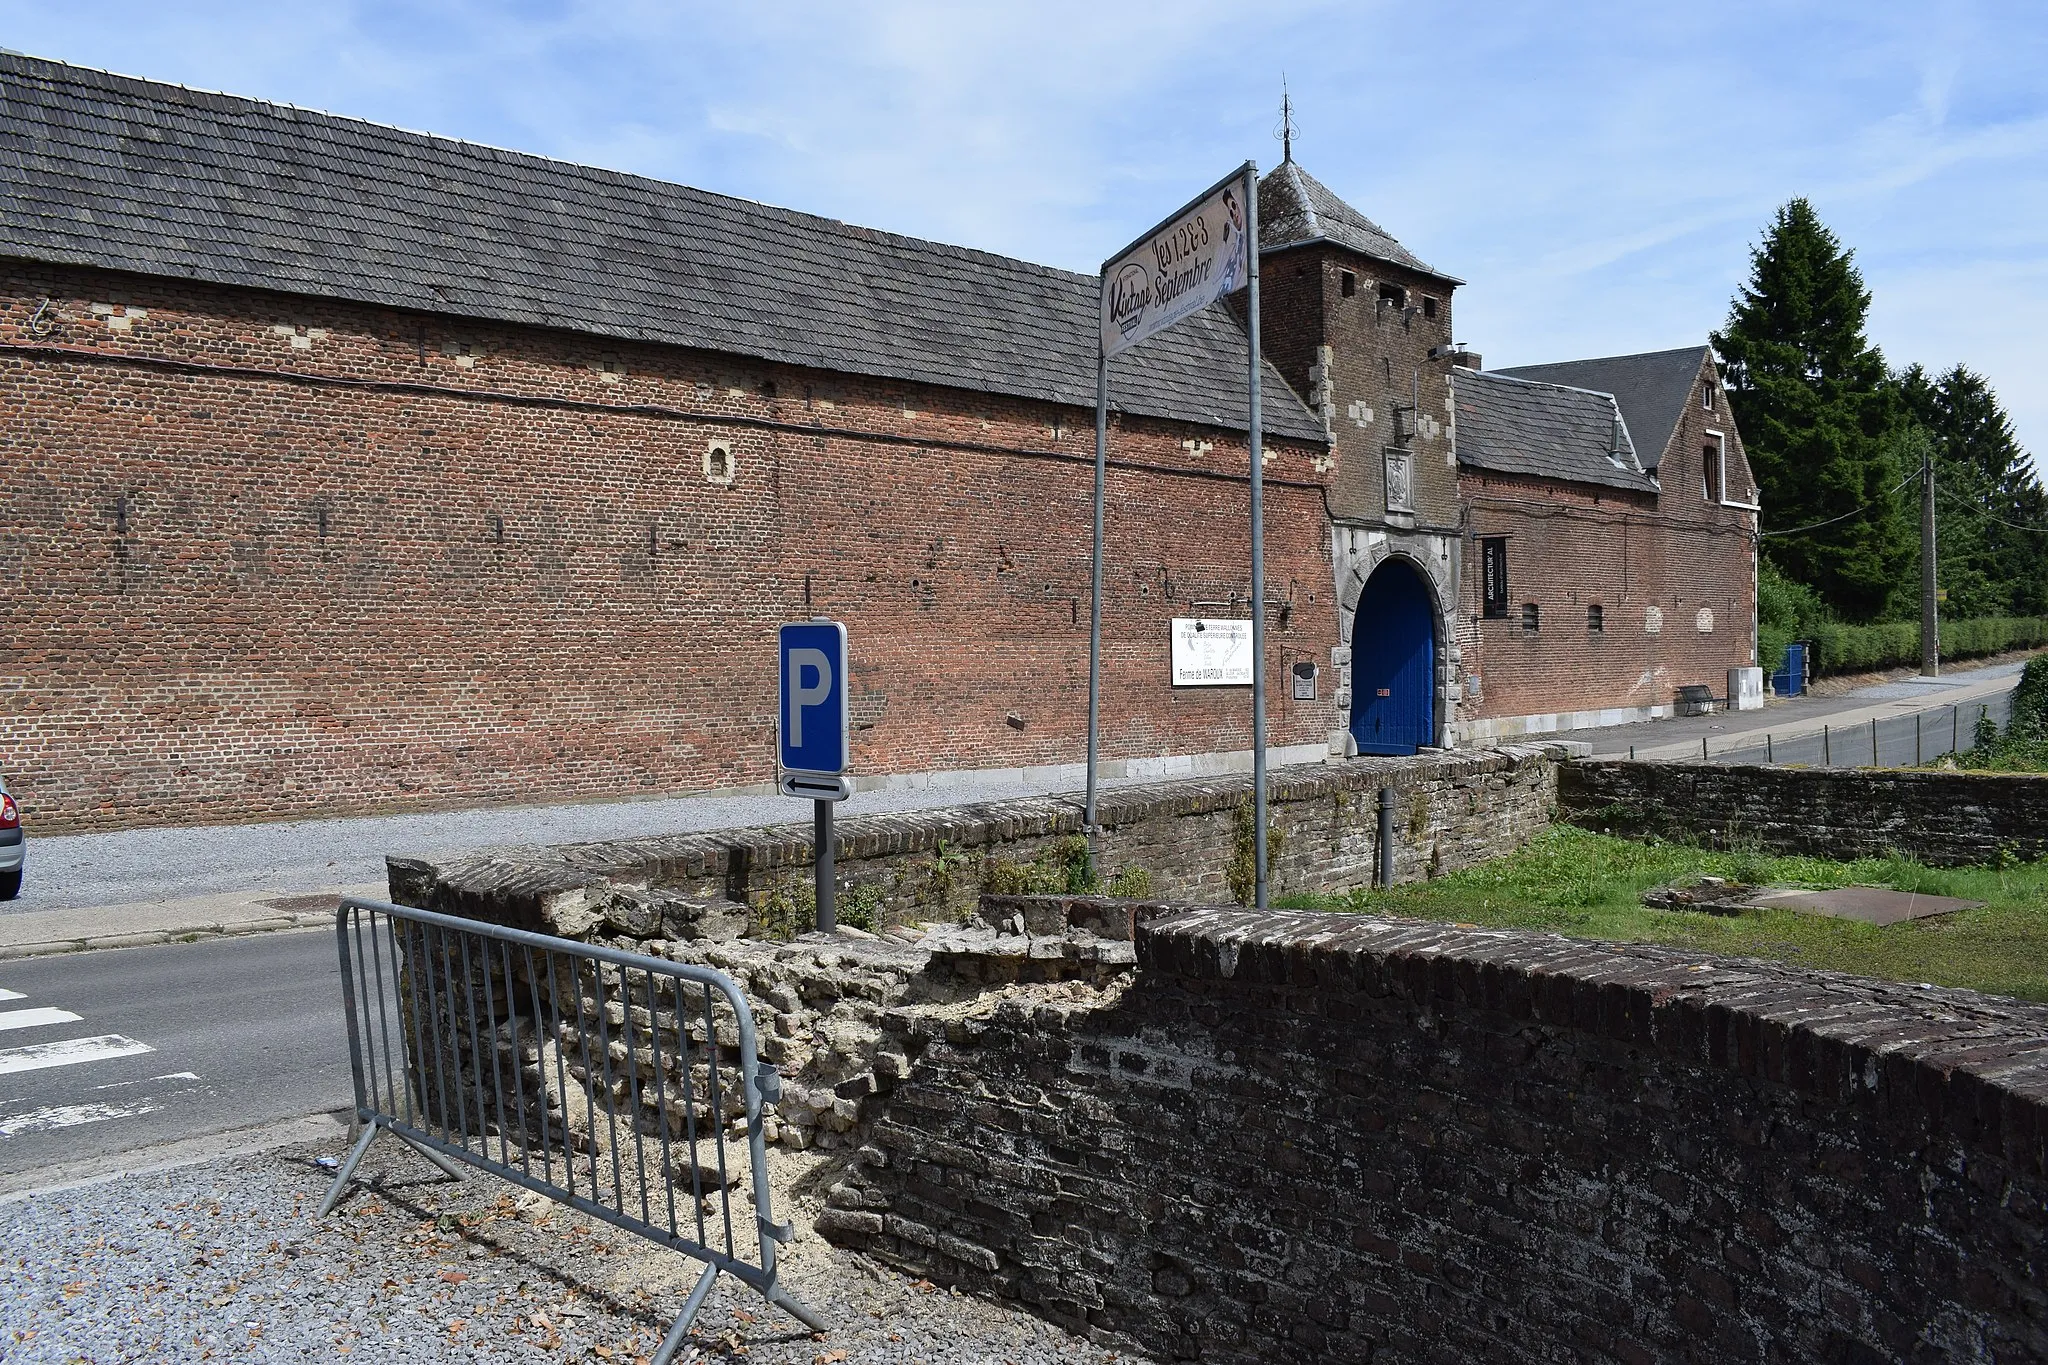 Photo showing: Vue des alentours du château de Waroux, à Alleur dans la commune d'Ans (province de Liège, en Belgique).